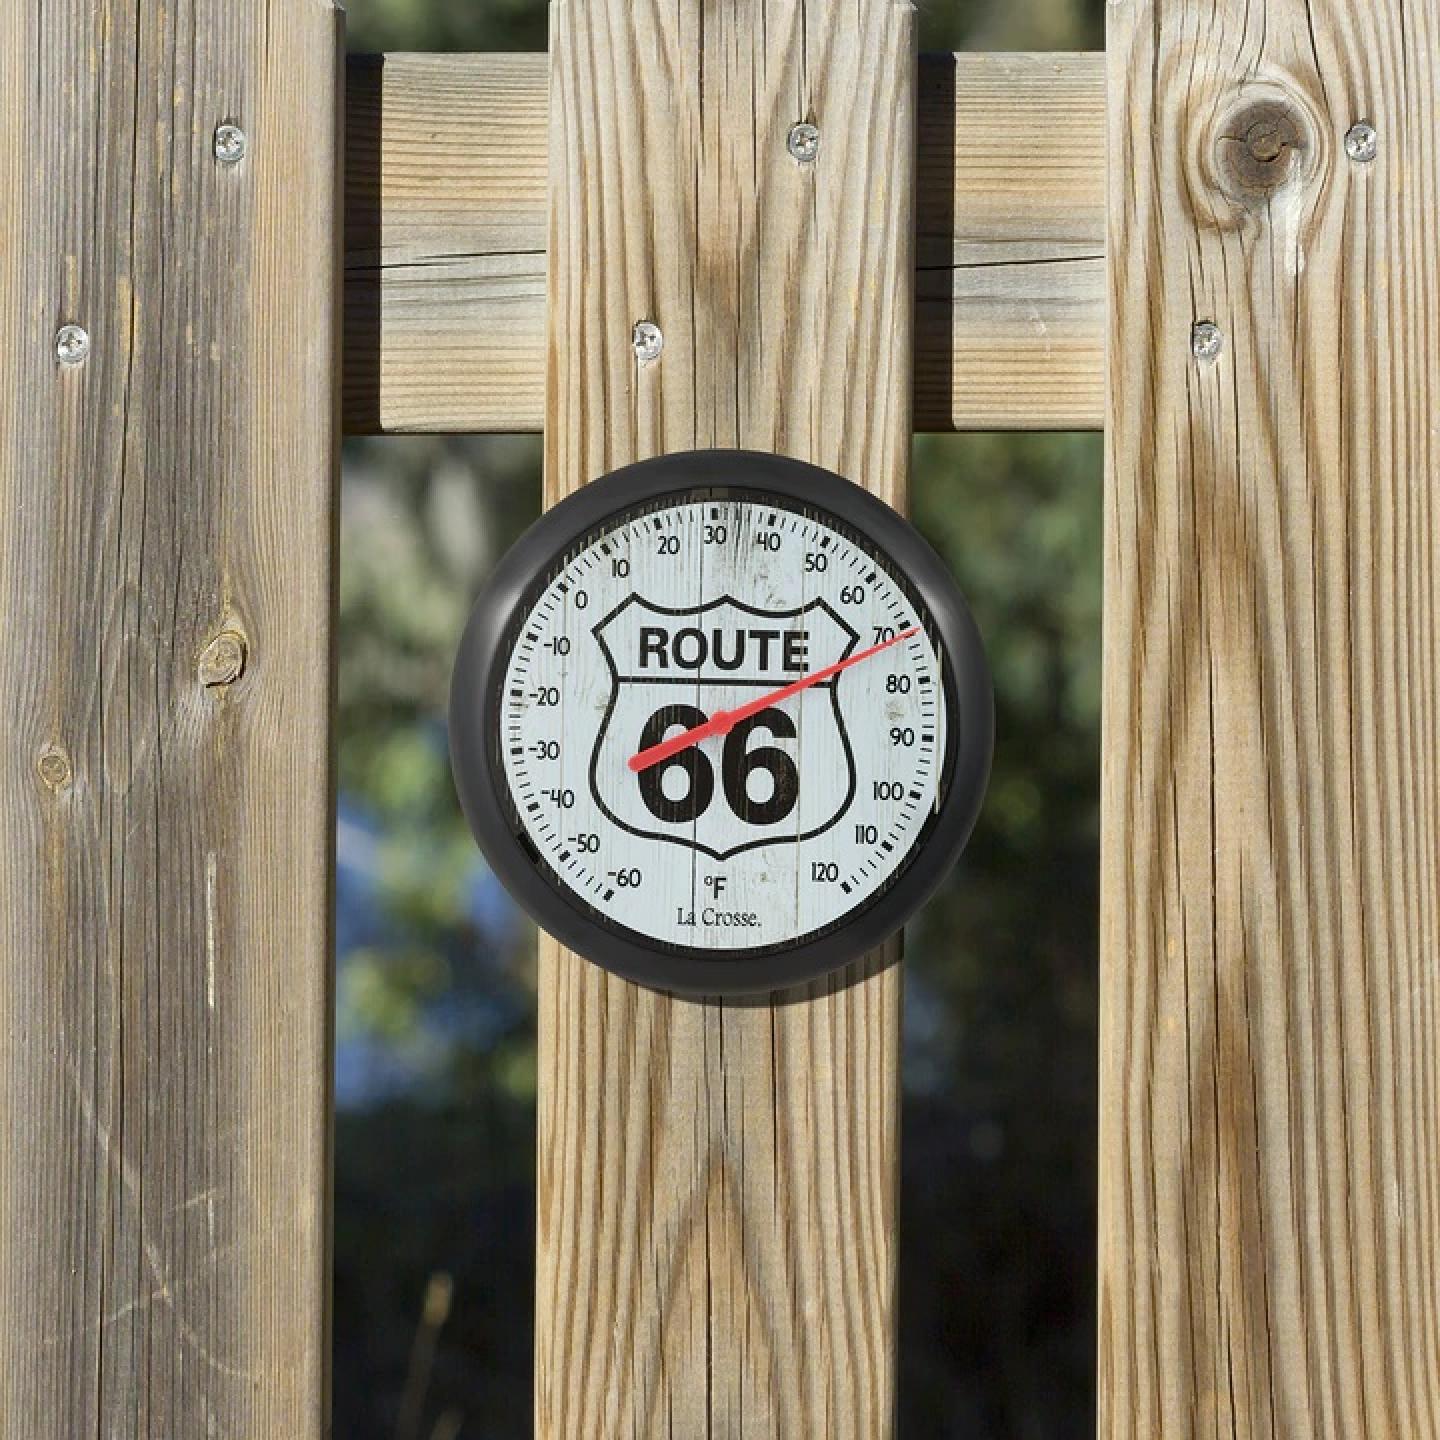 La Crosse Route 66 Thermometer